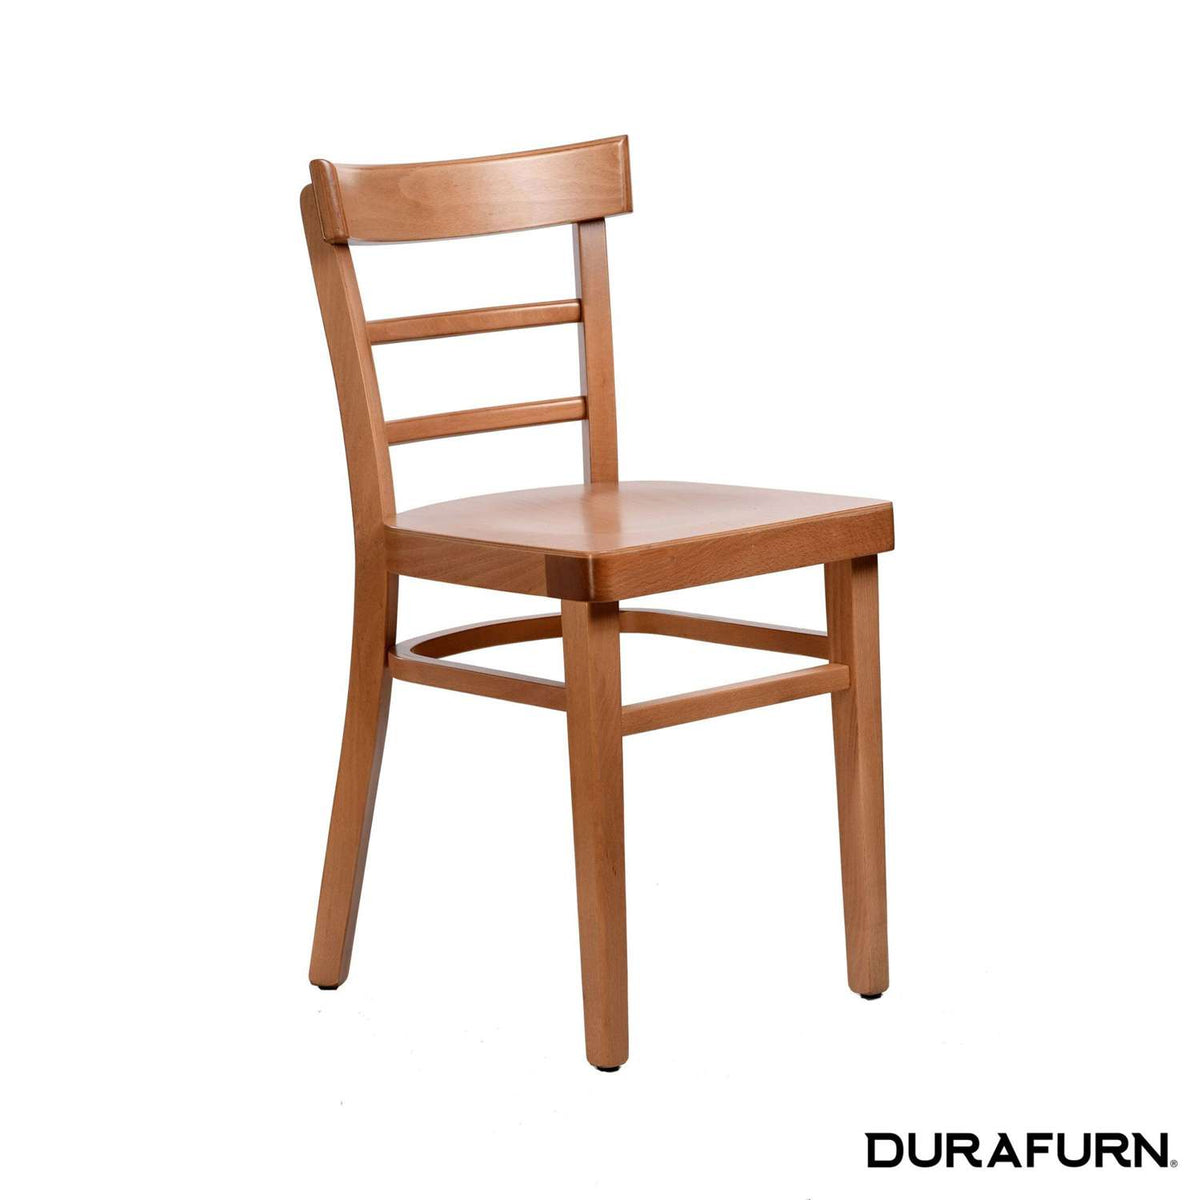 Durafurn Vienna Chair Ply Seat